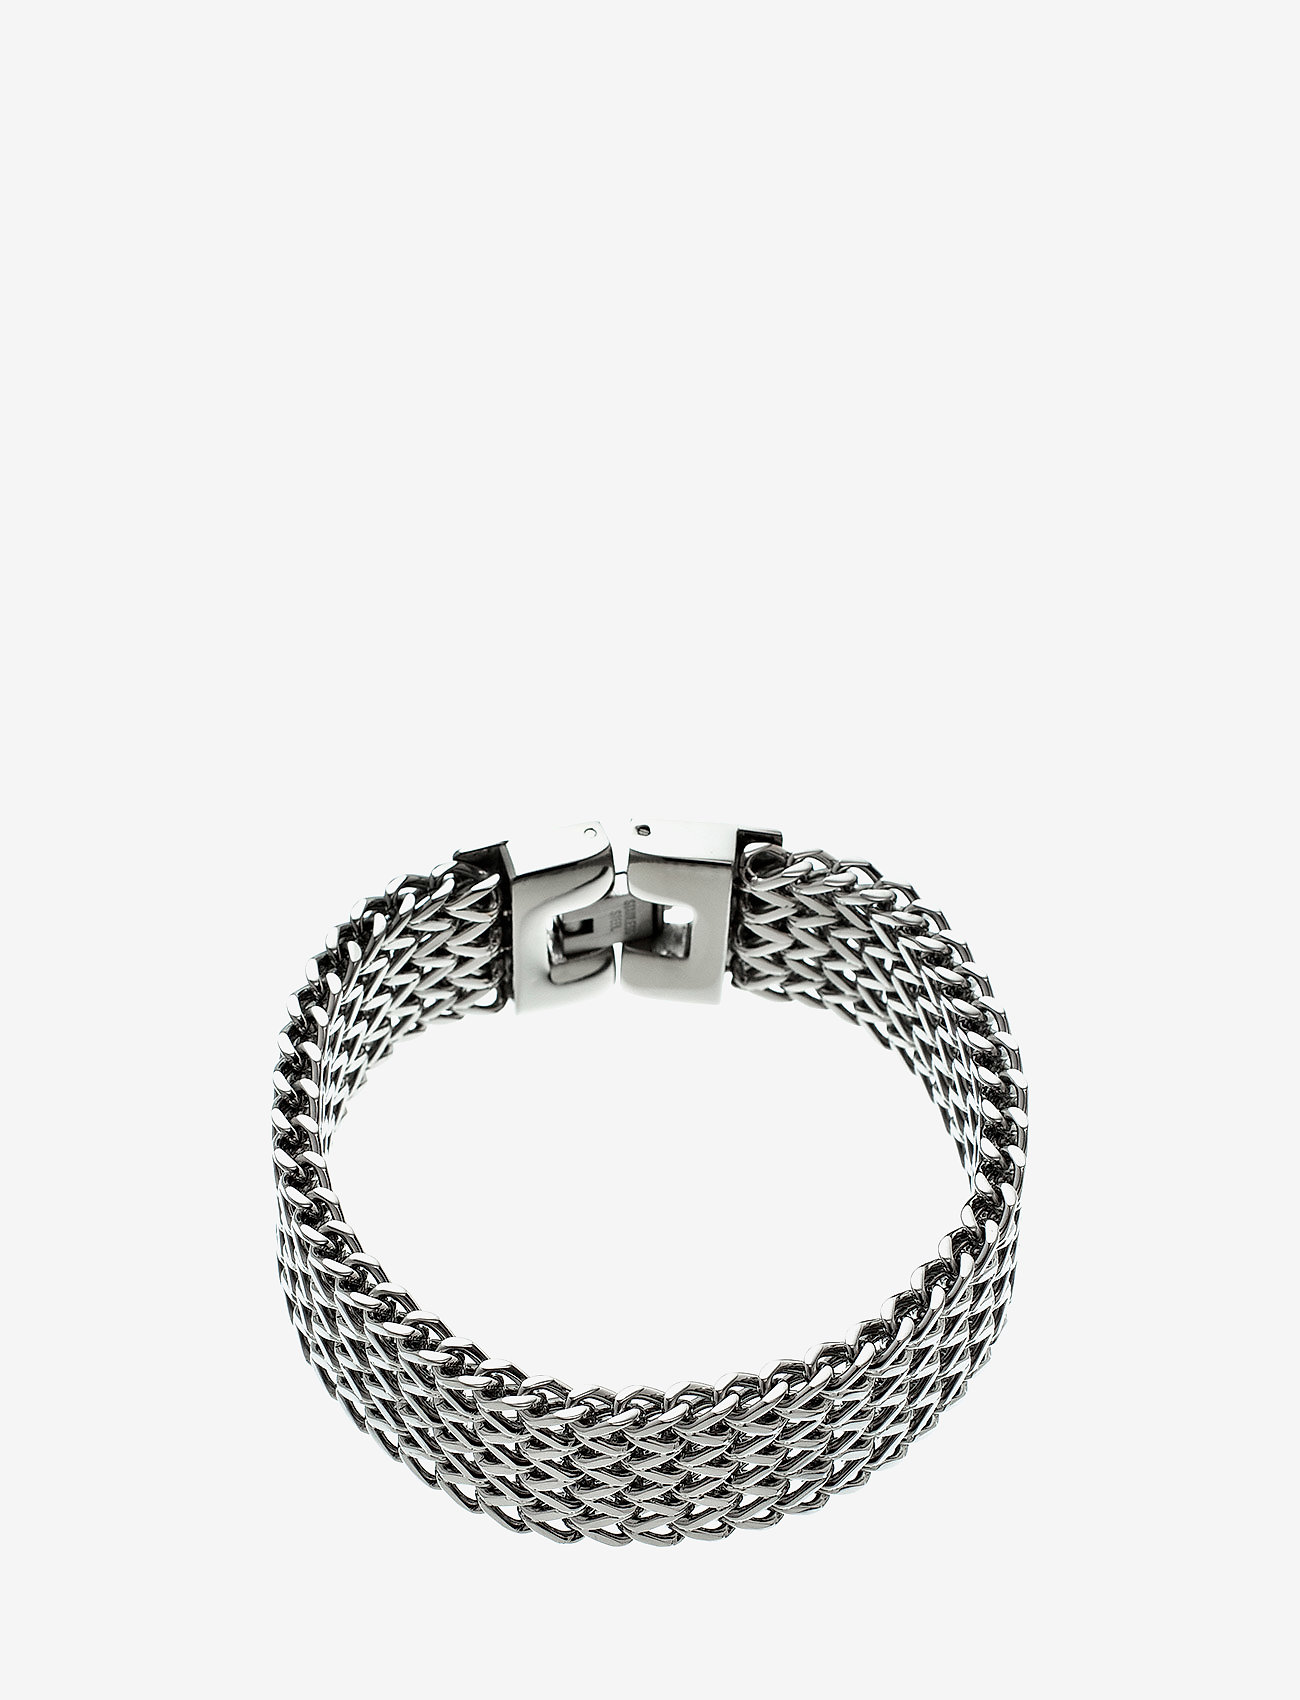 Edblad - Lee bracelet steel - kettenarmbänder - steel - 0